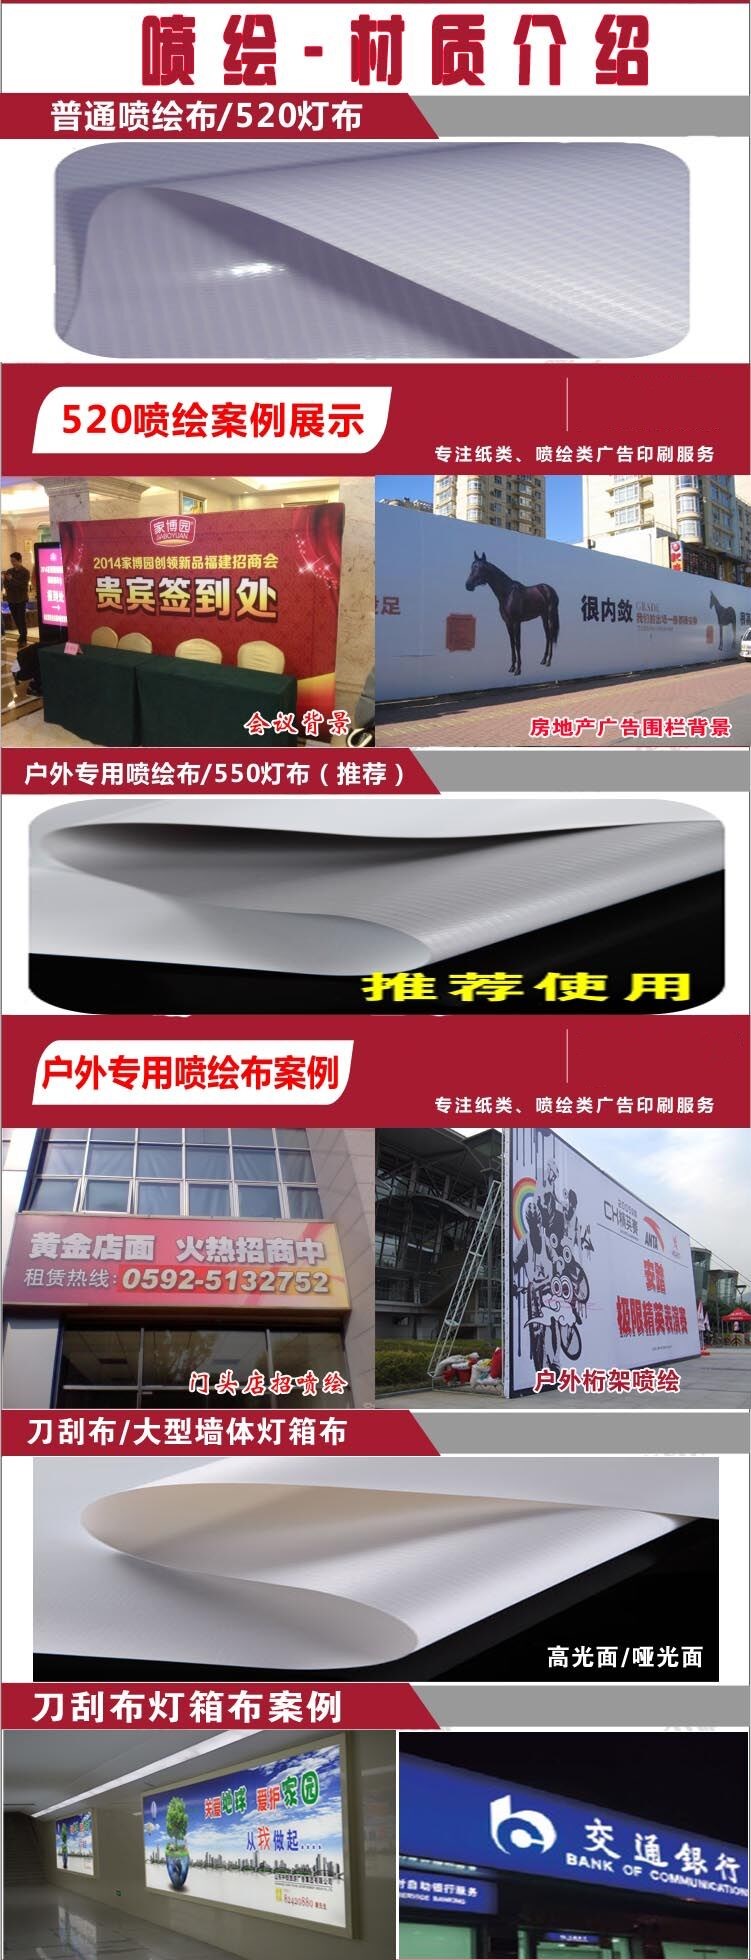 武汉广告牌制作|广告牌设计|户外广告牌|户外广告牌|户外广告公司|户外广告设计|喷绘写真制作